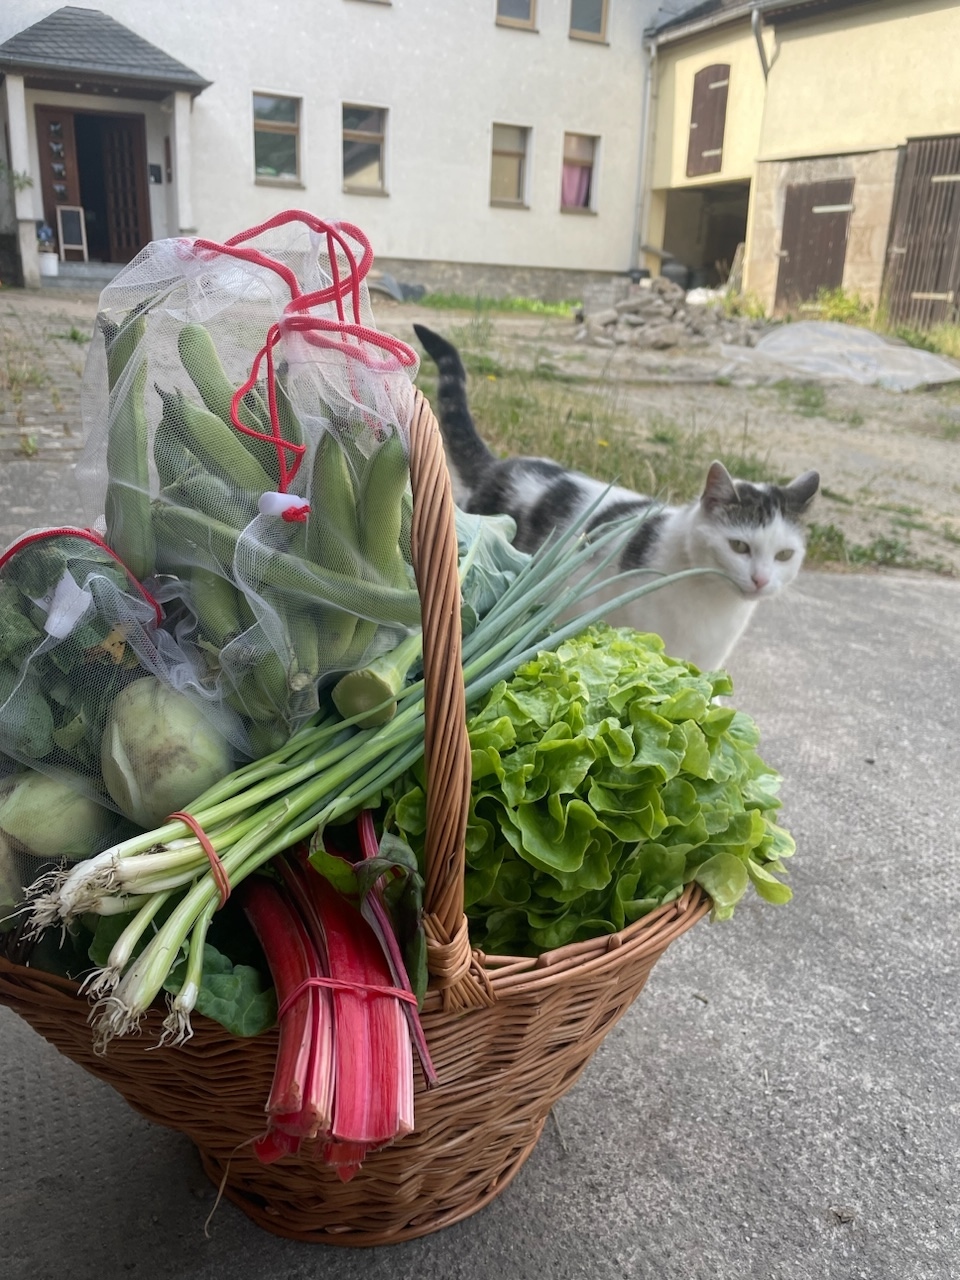 Gemüsekorb vom Acker im Juni und Hauskatze. - Photo: © R. Bretzlaff